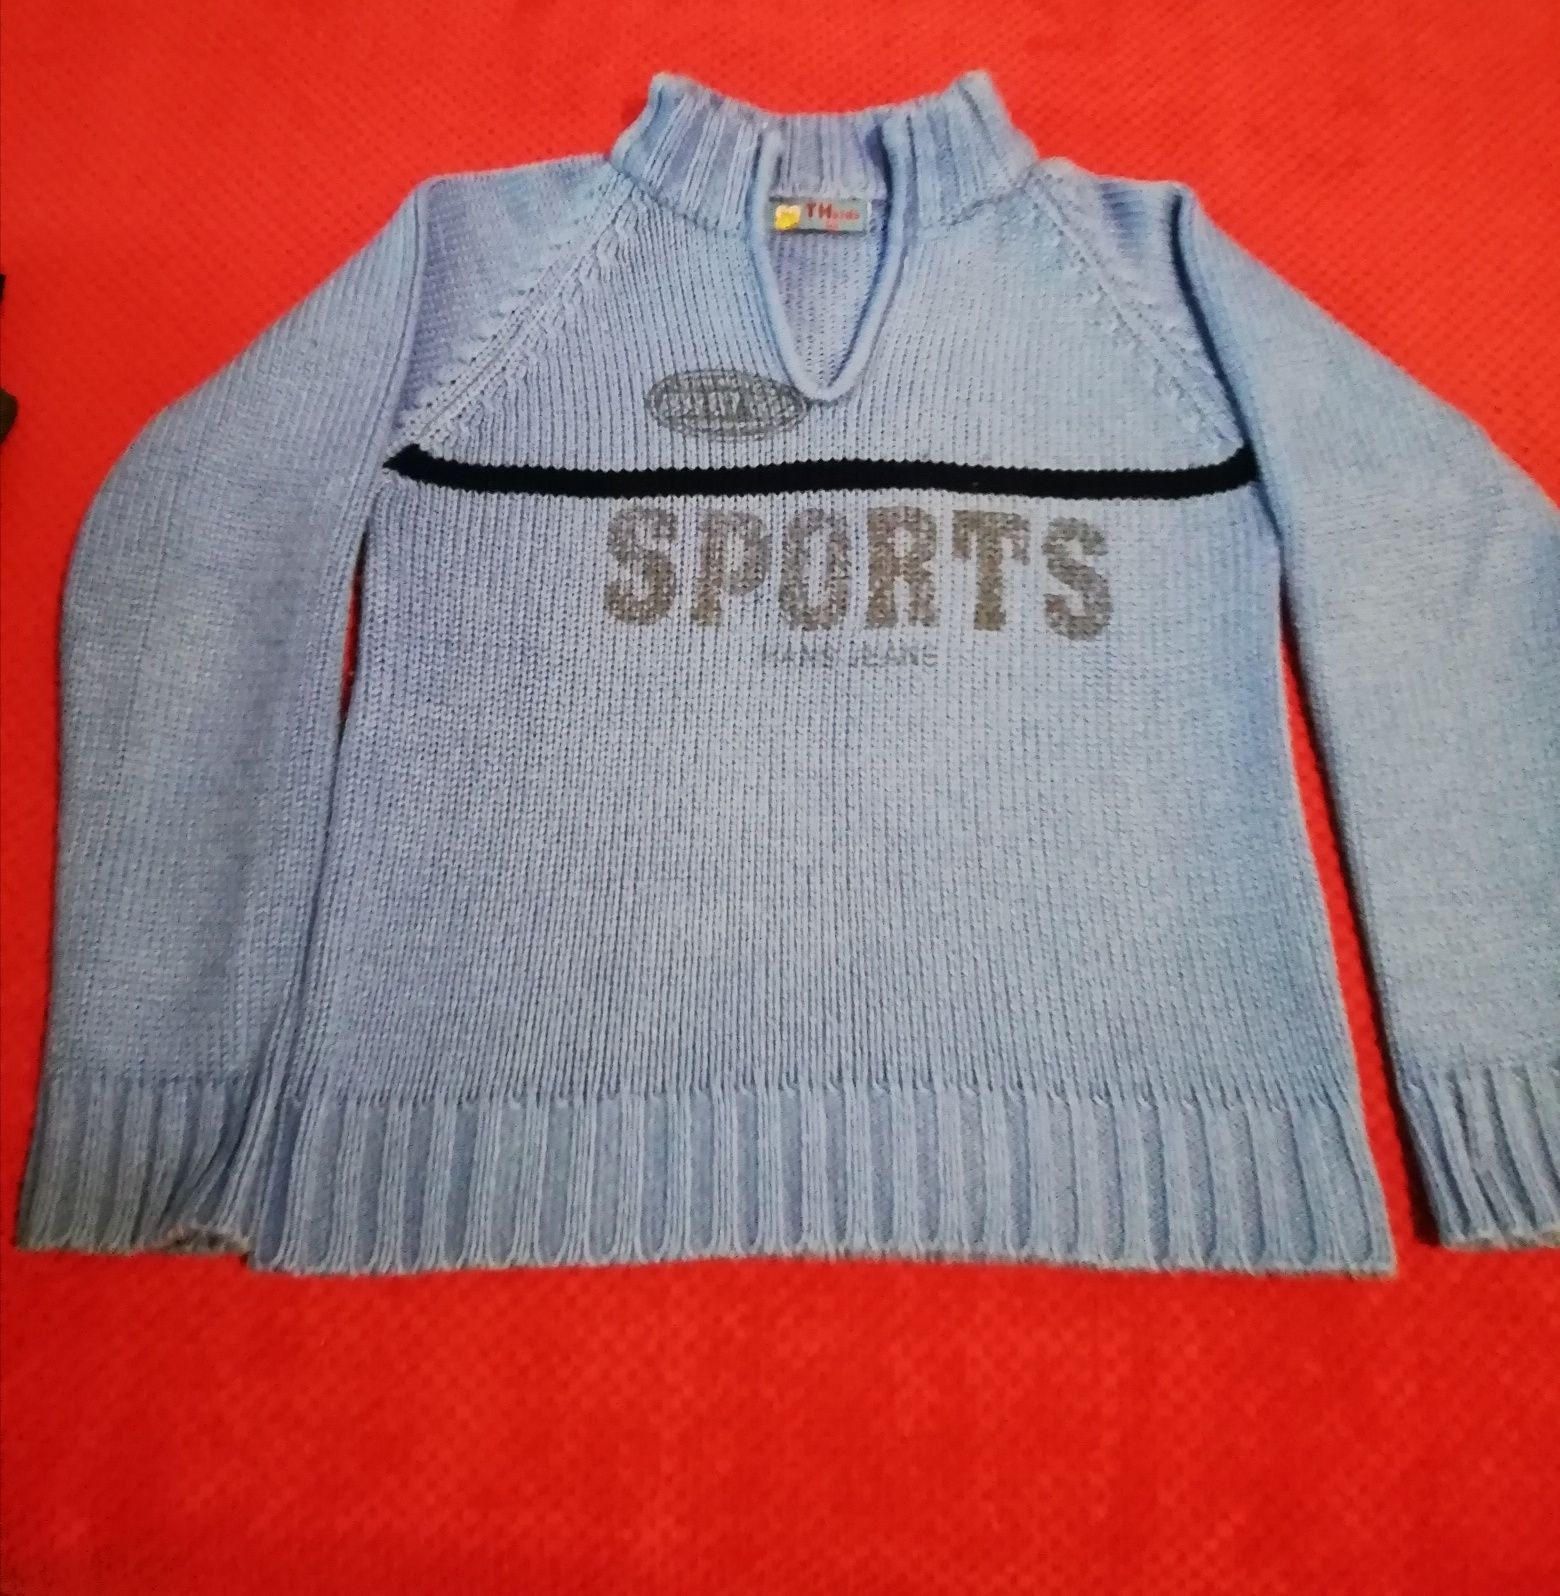 Blugi și pulovere pentru băieți, diferite modele